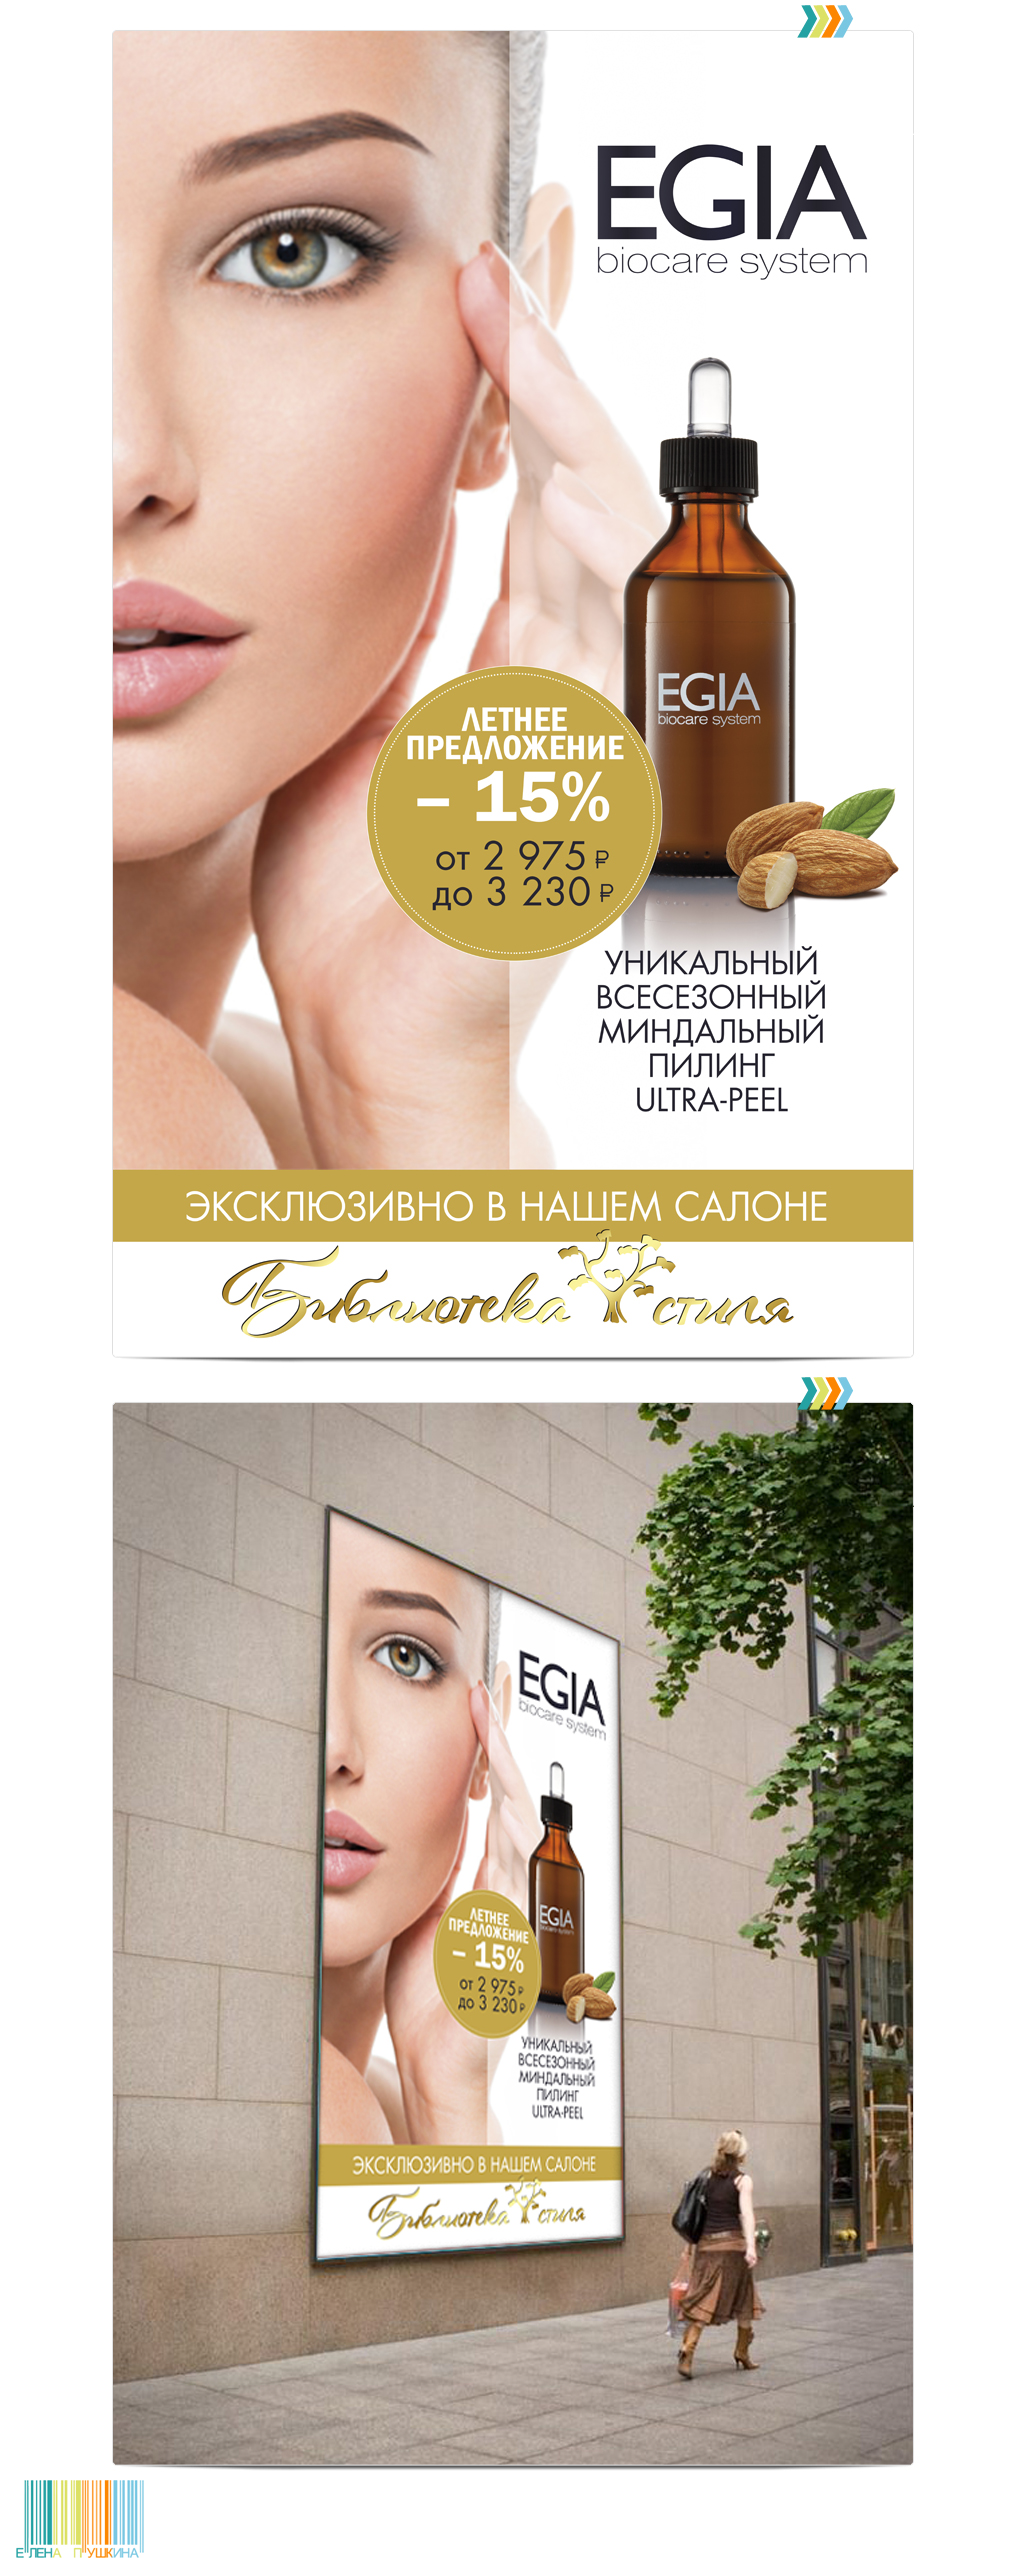 Рекламный плакат косметической компании «Биосфера» Презентационный дизайн Портфолио